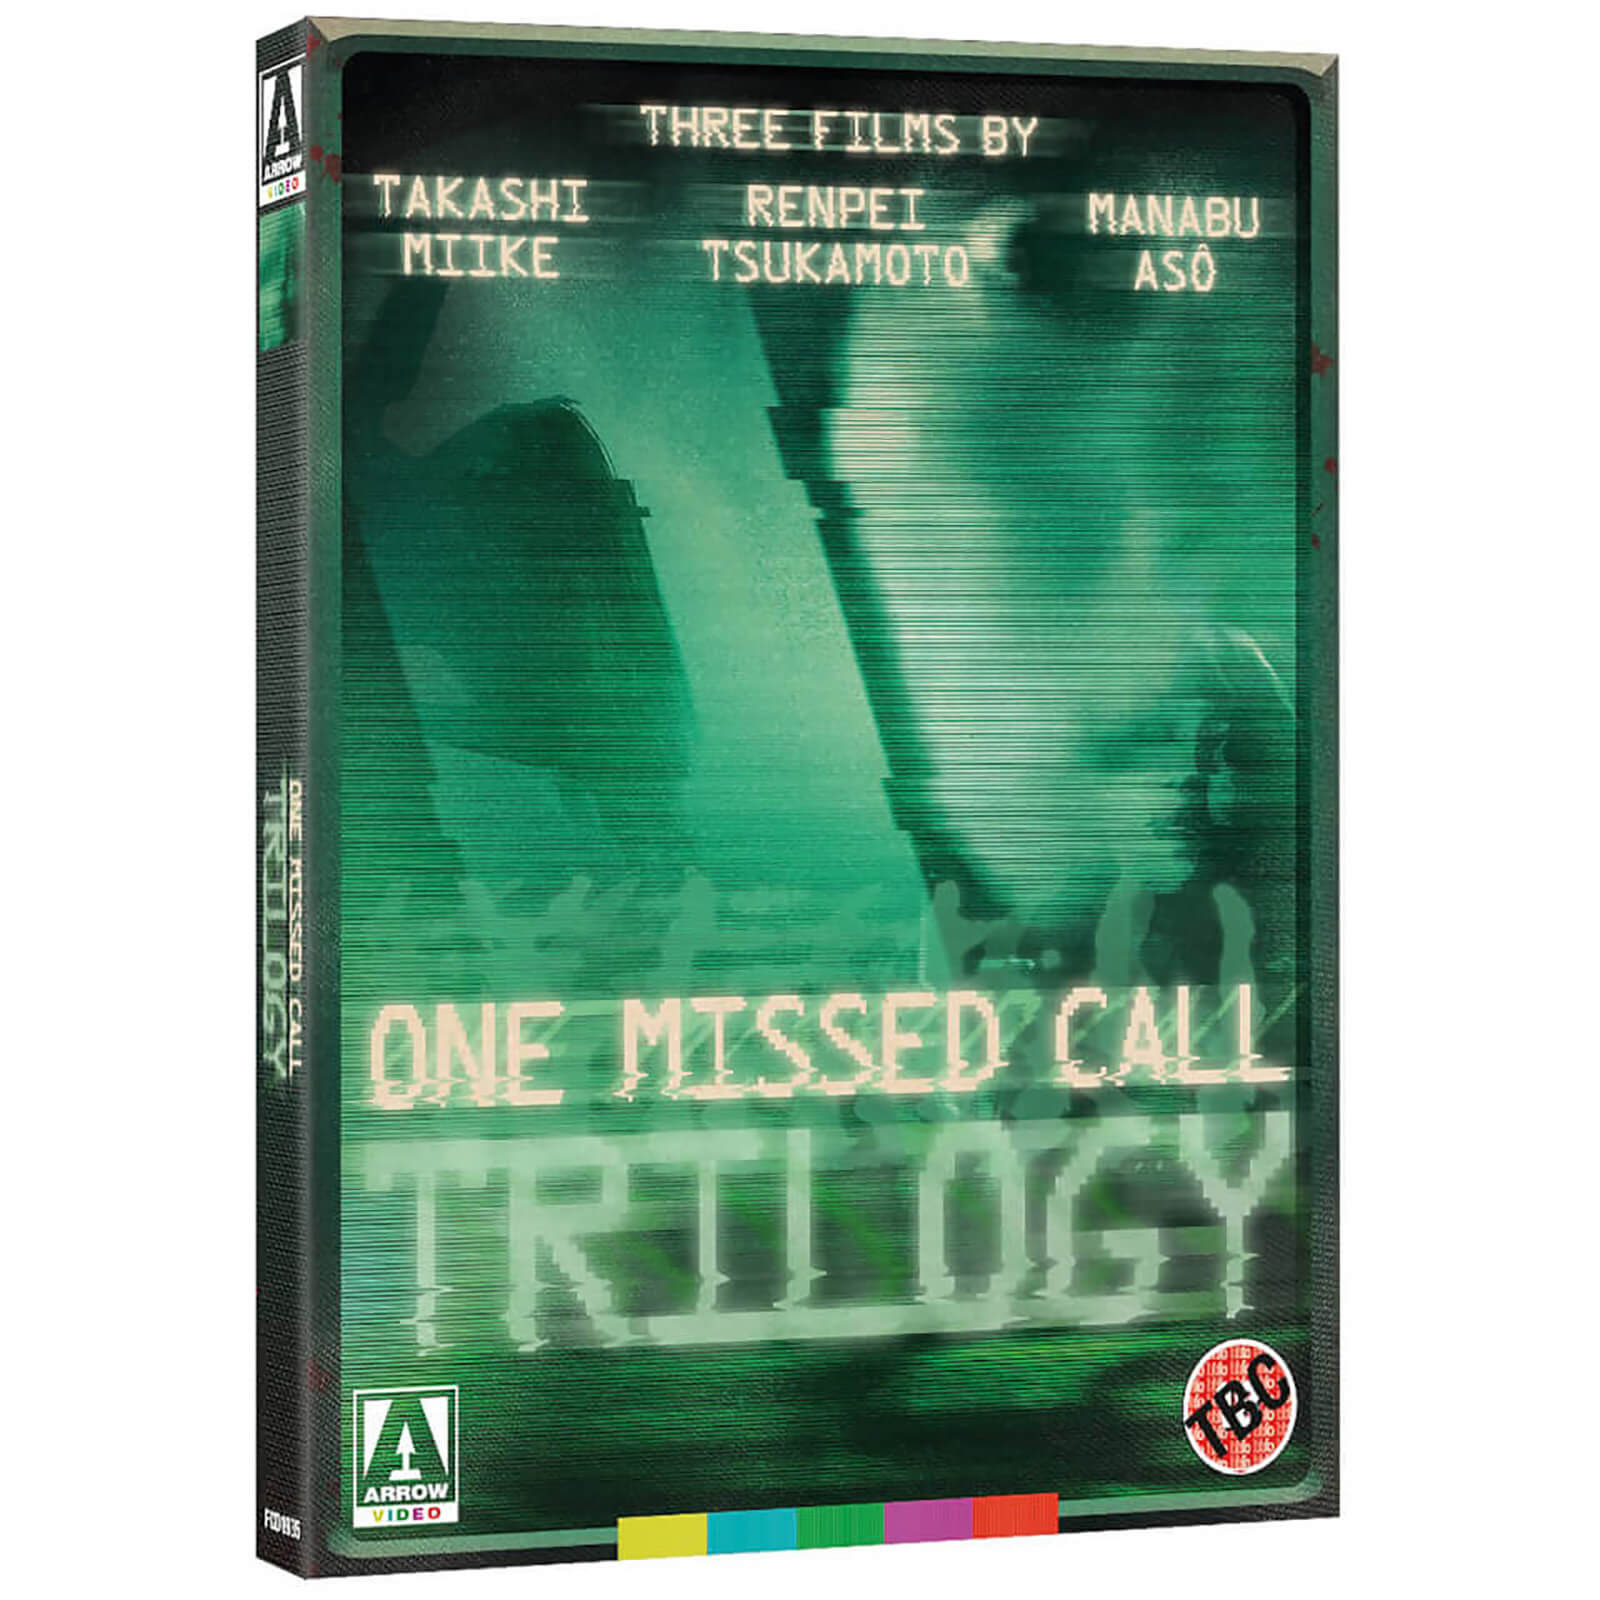 One Missed Call Trilogy Trilogie von Arrow Video